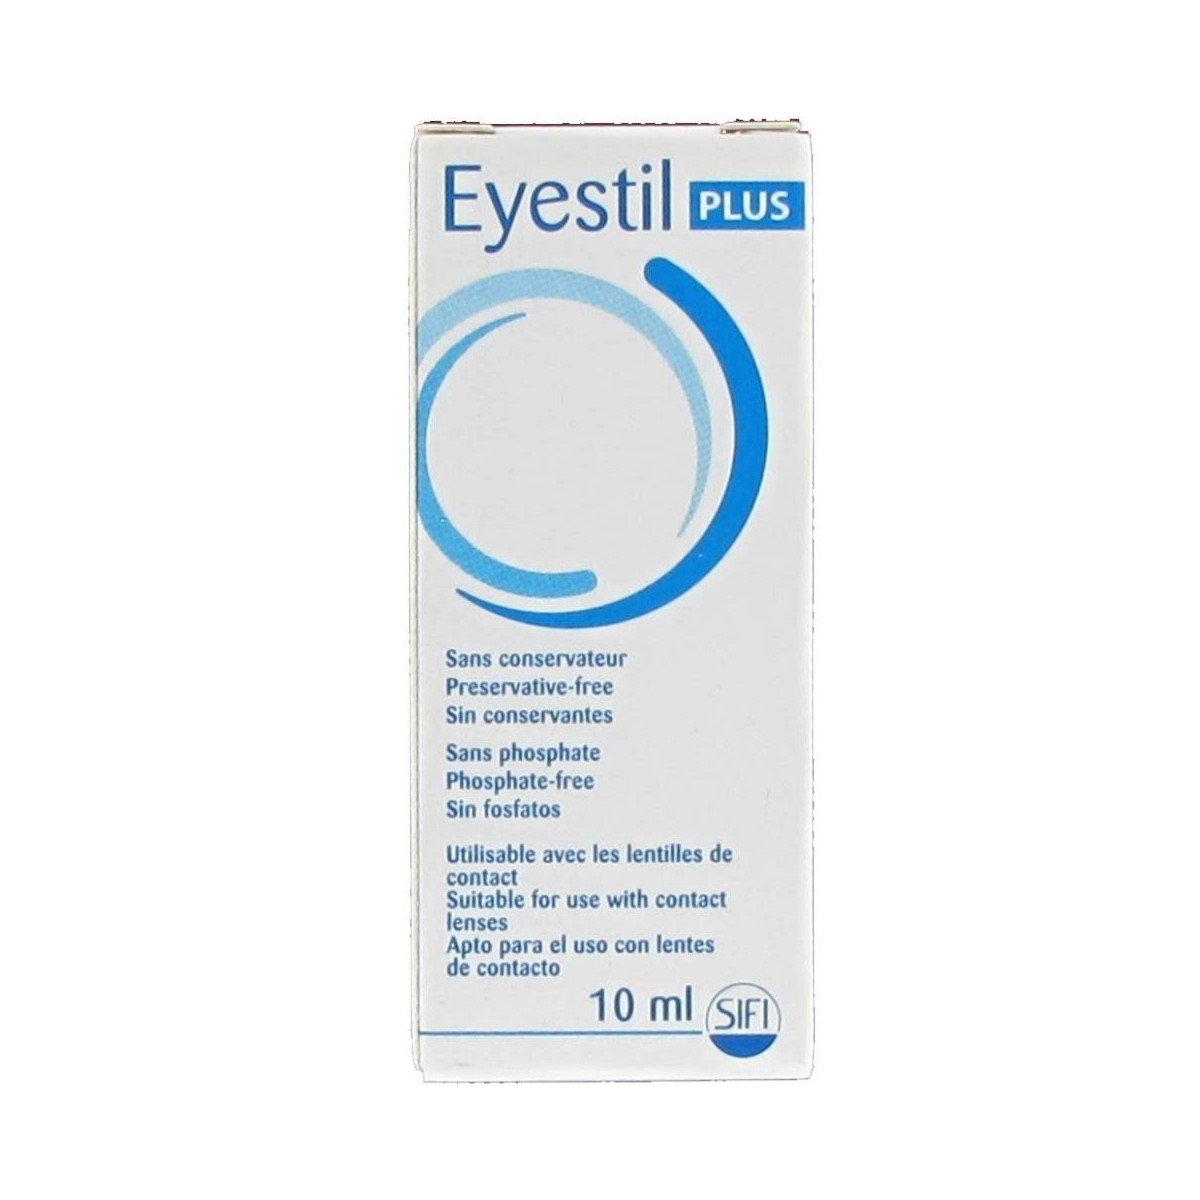 eyestil plus 10 ml